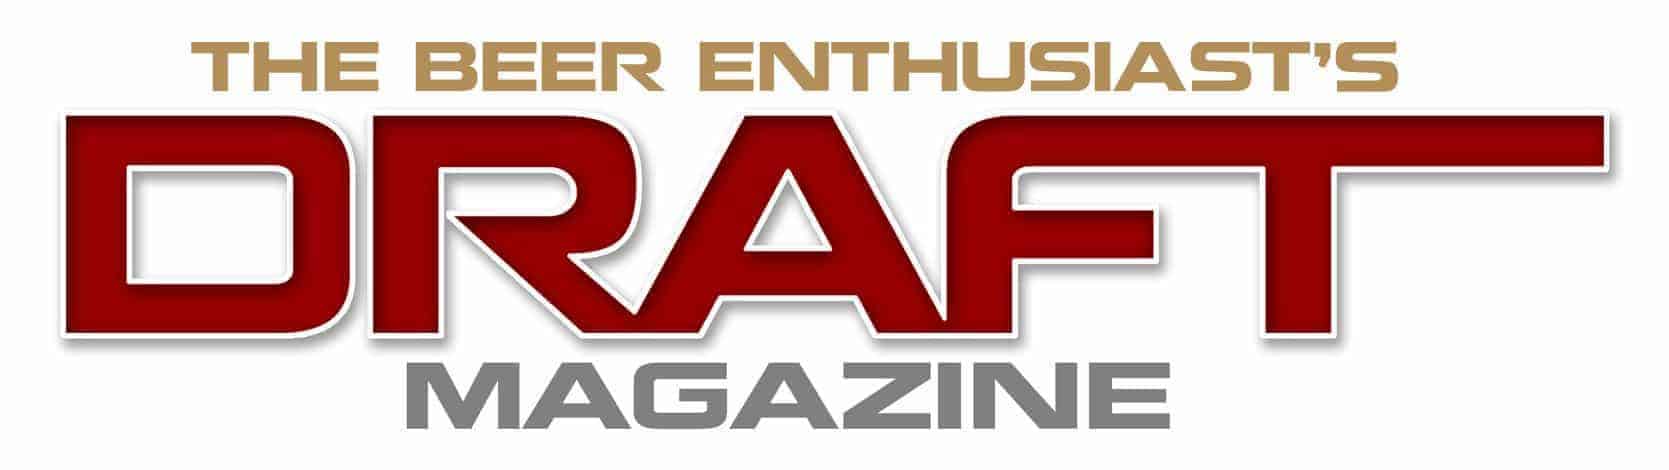 Draft Magazine